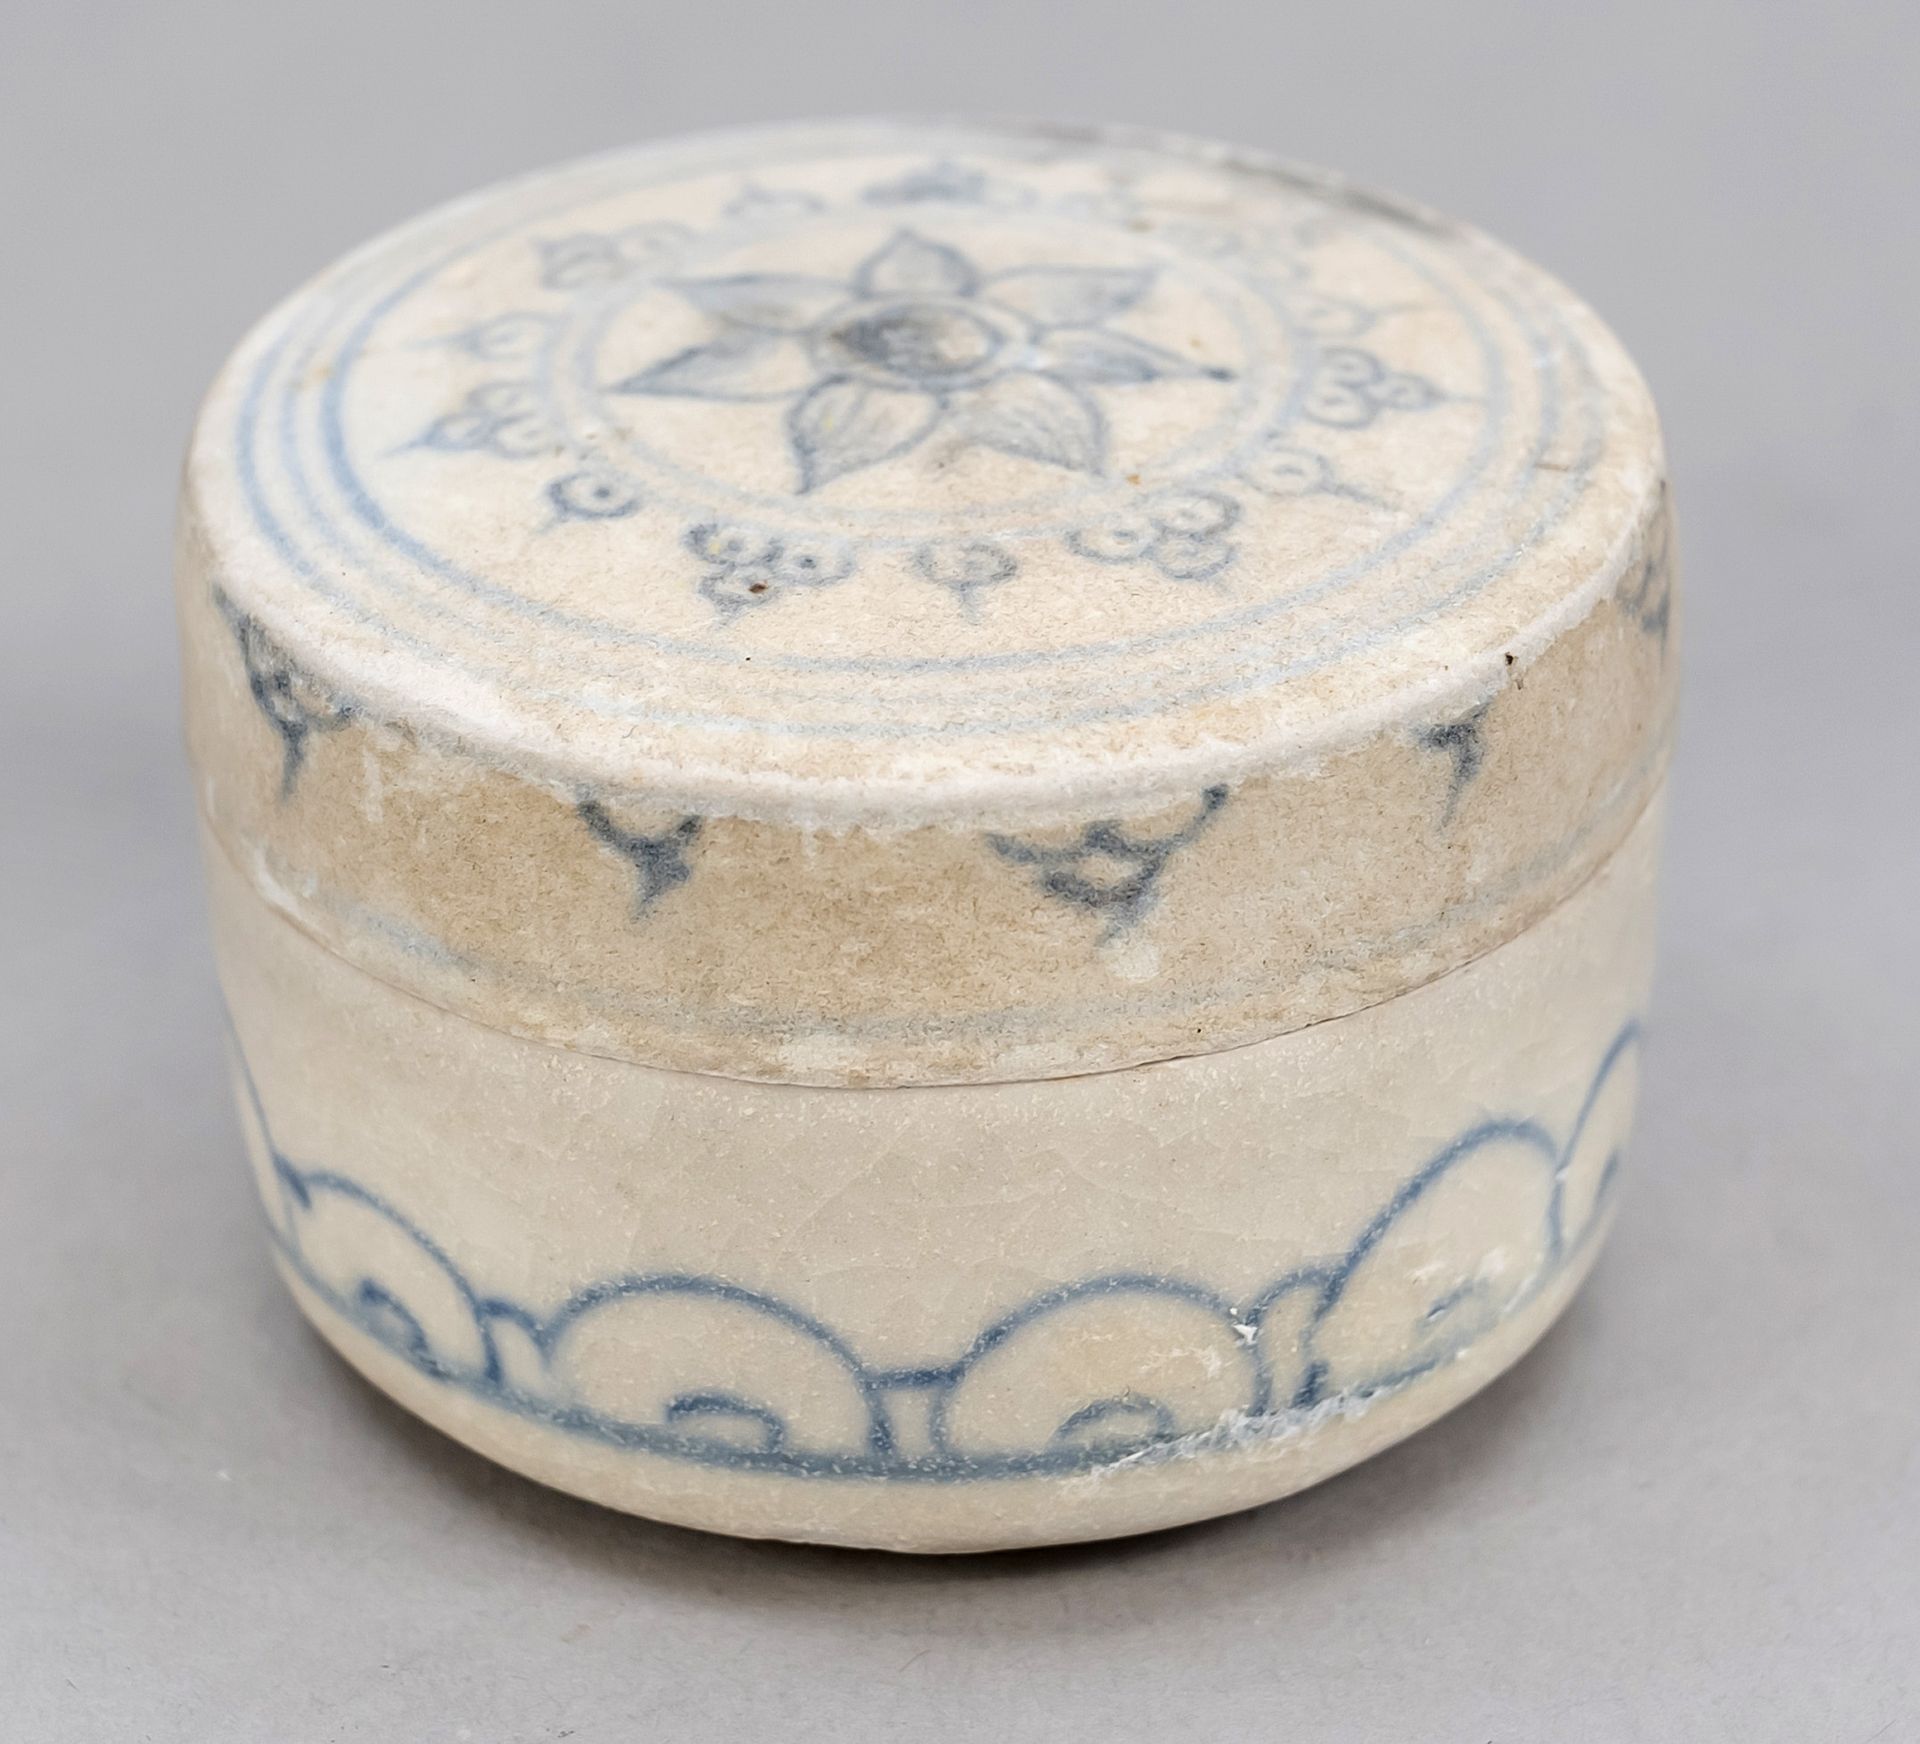 Null 蓝白盖盒（会安会），越南，可能是15/16世纪。 盒盖上有钴蓝色的装饰，花纹以圆圈为边，下部有波浪装饰，高4/D. 5.5厘米